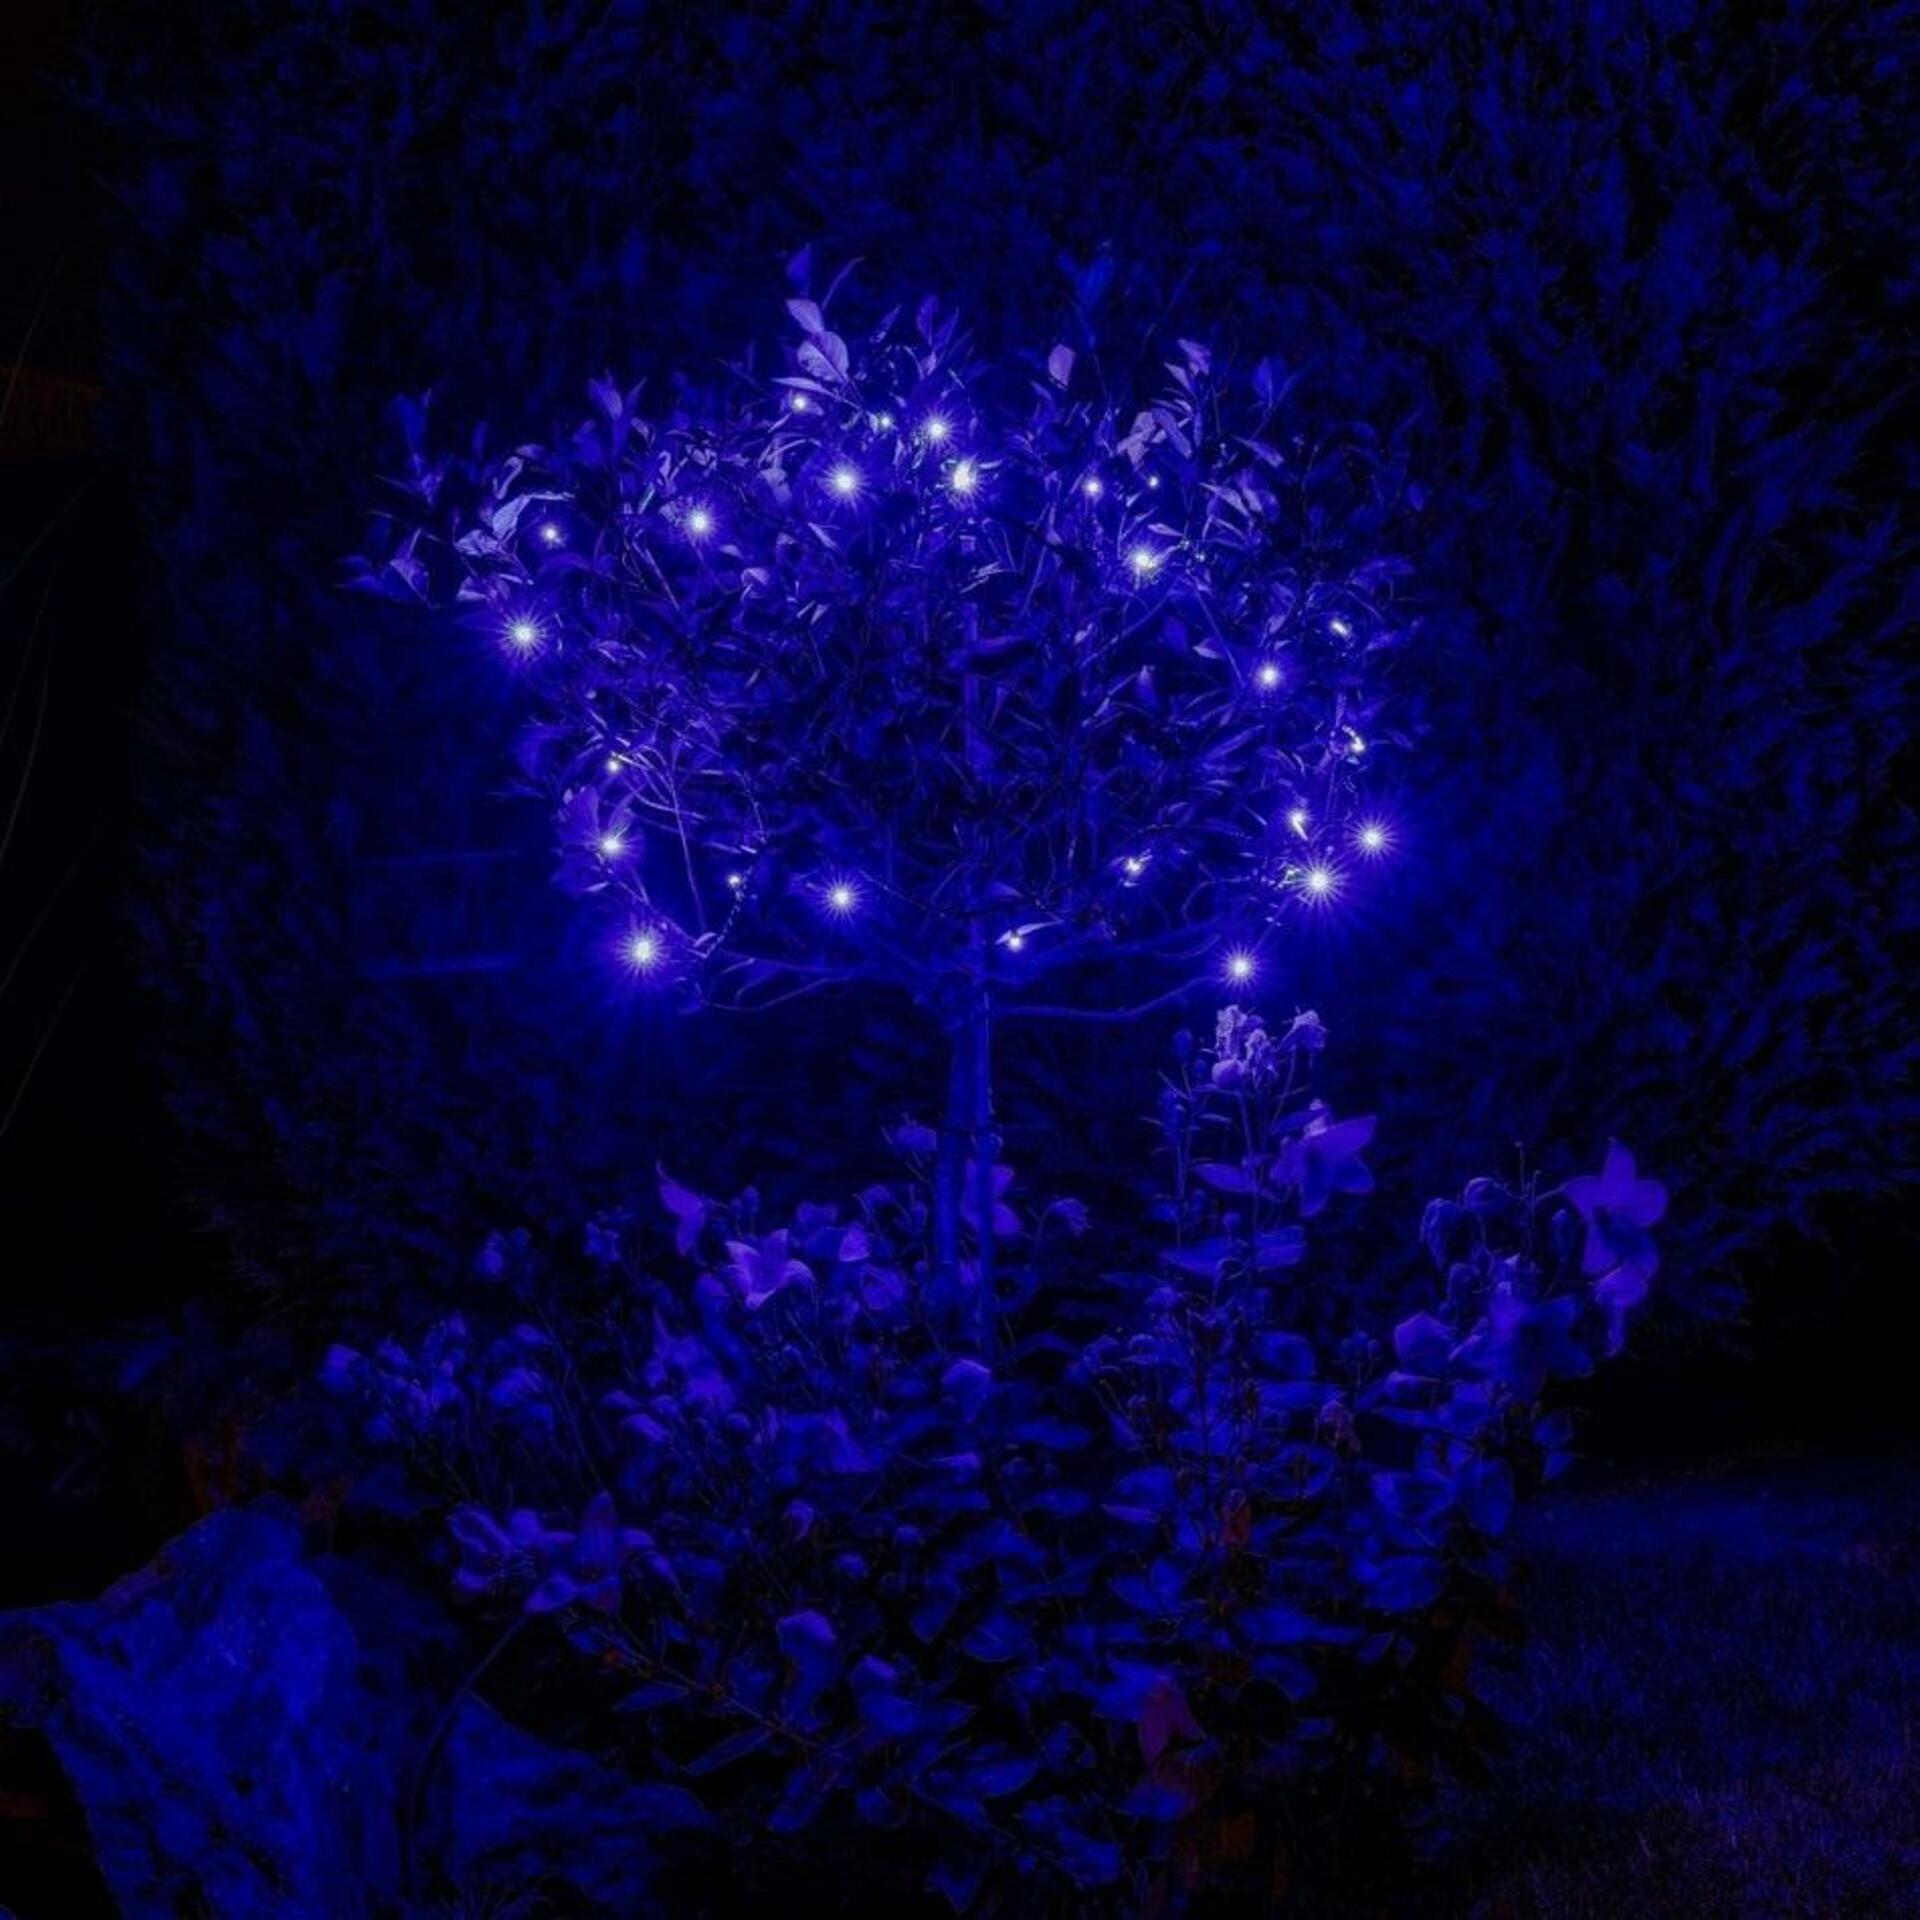 DecoLED LED osvětlení vánoční venkovní - 4 m, 32 modrých diod